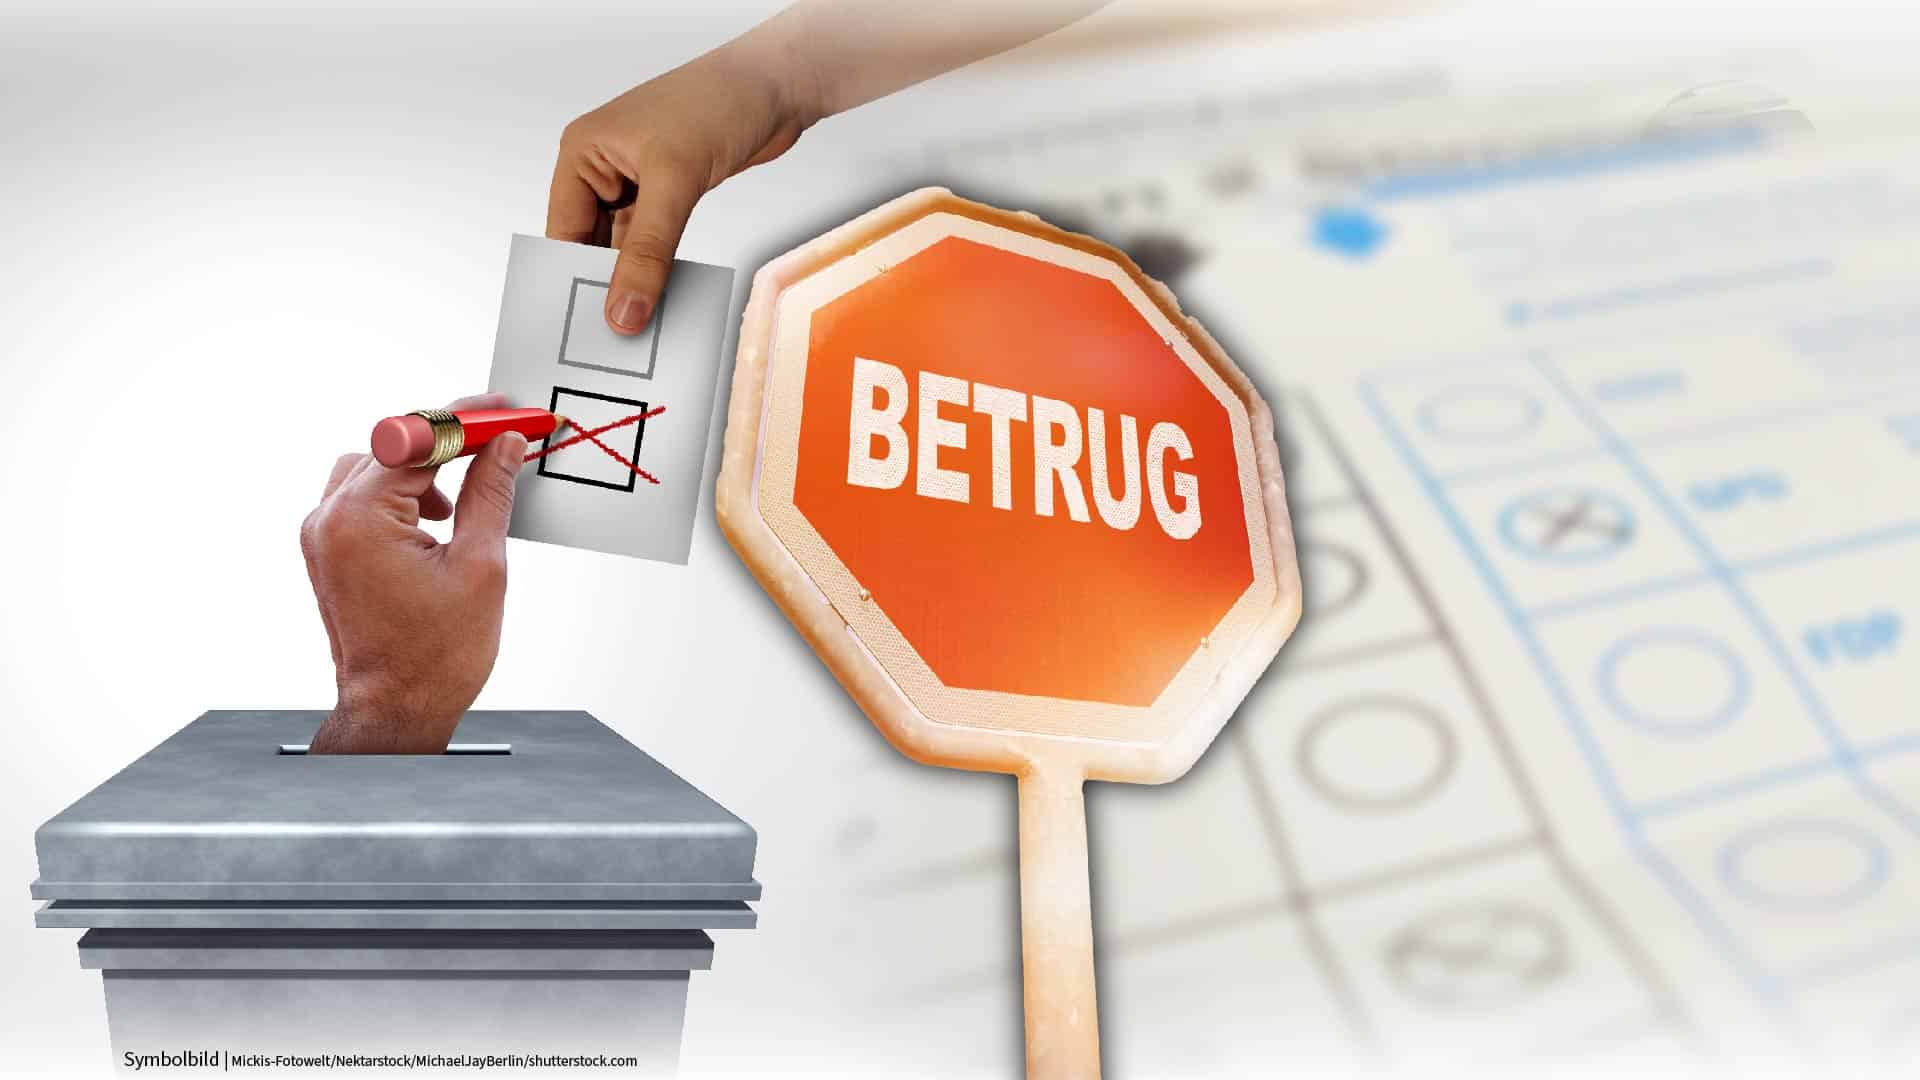 Wahlbetrug bei EU-Wahl: Präparierte Stimmzettel in Bayern aufgetaucht!